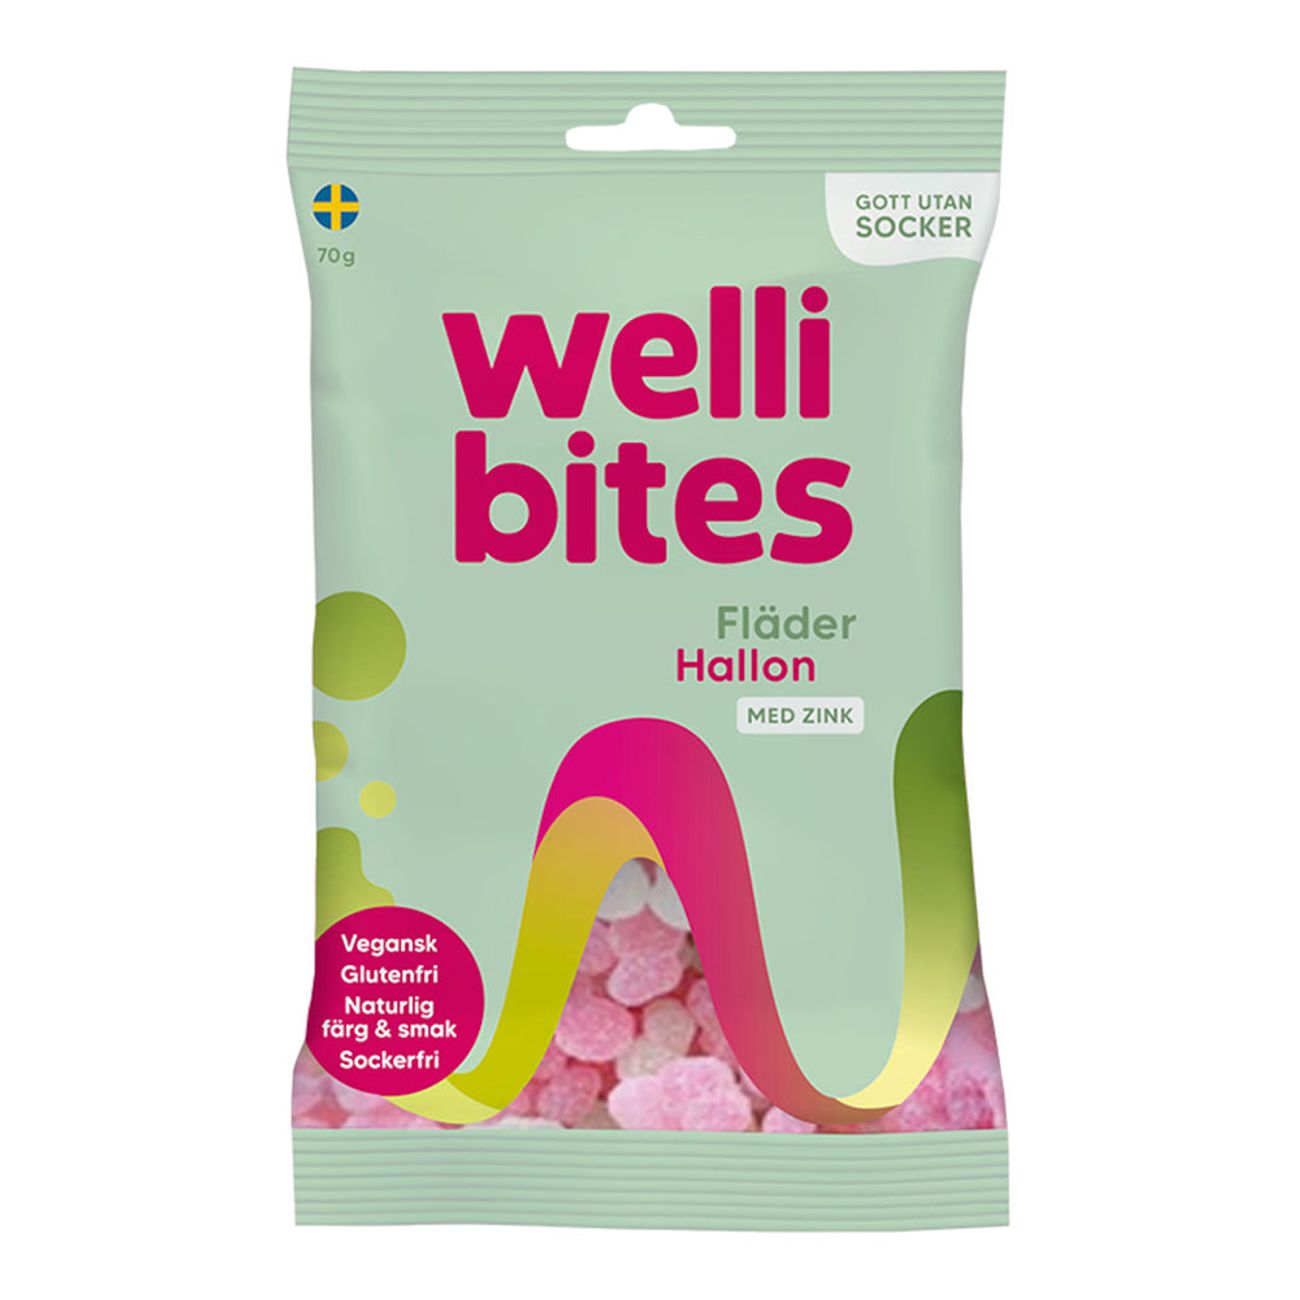 wellibites-flader-hallon-78614-1